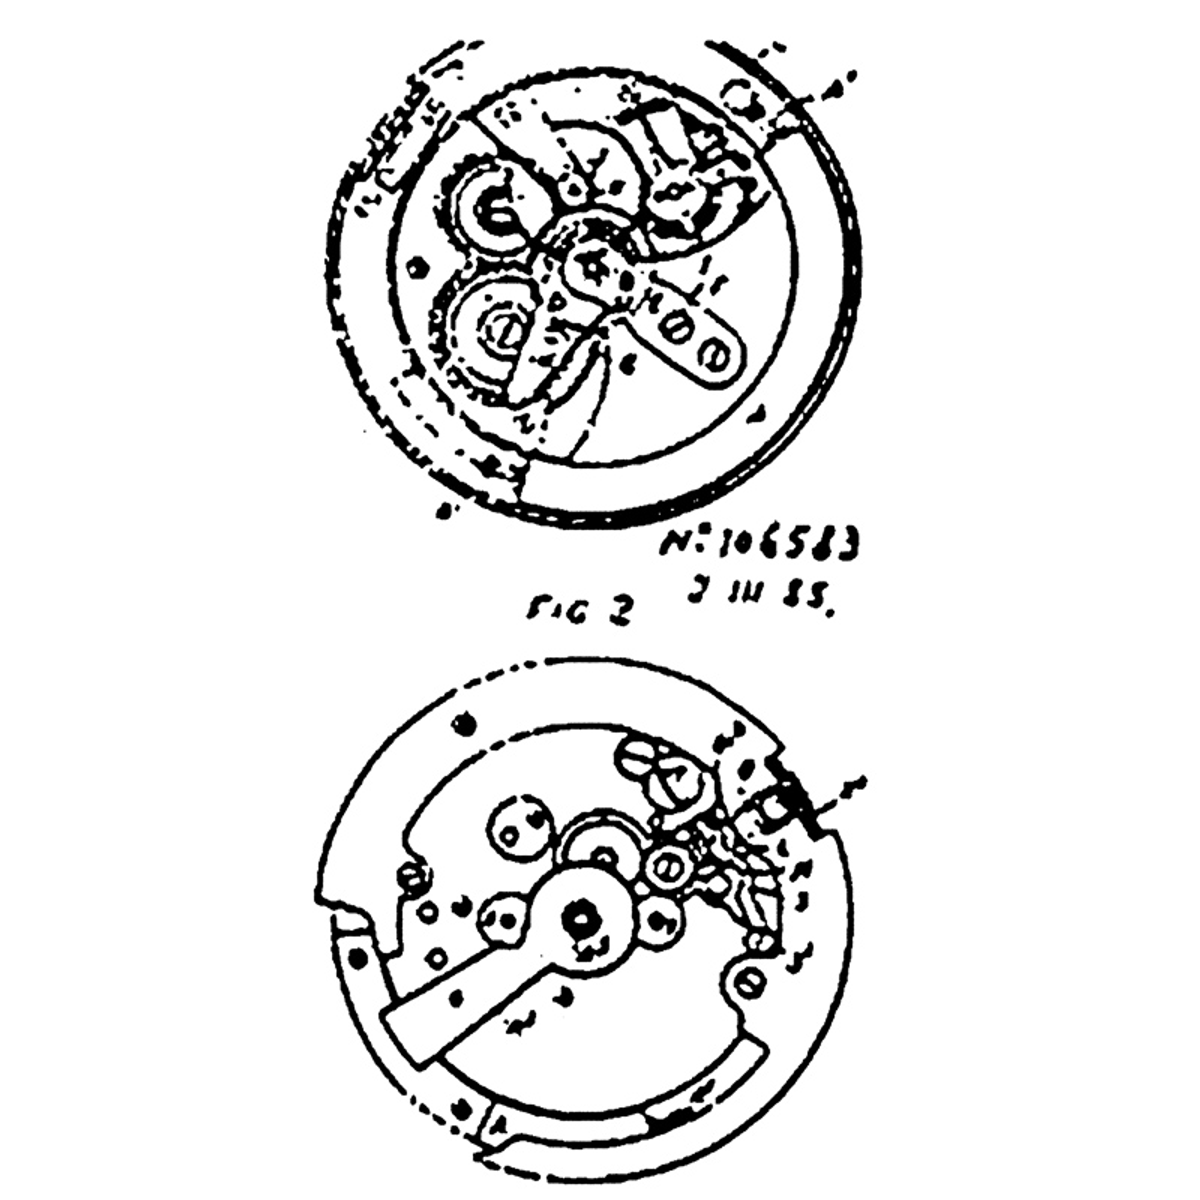 1924, automatic wristwatch patent, John Harwood 